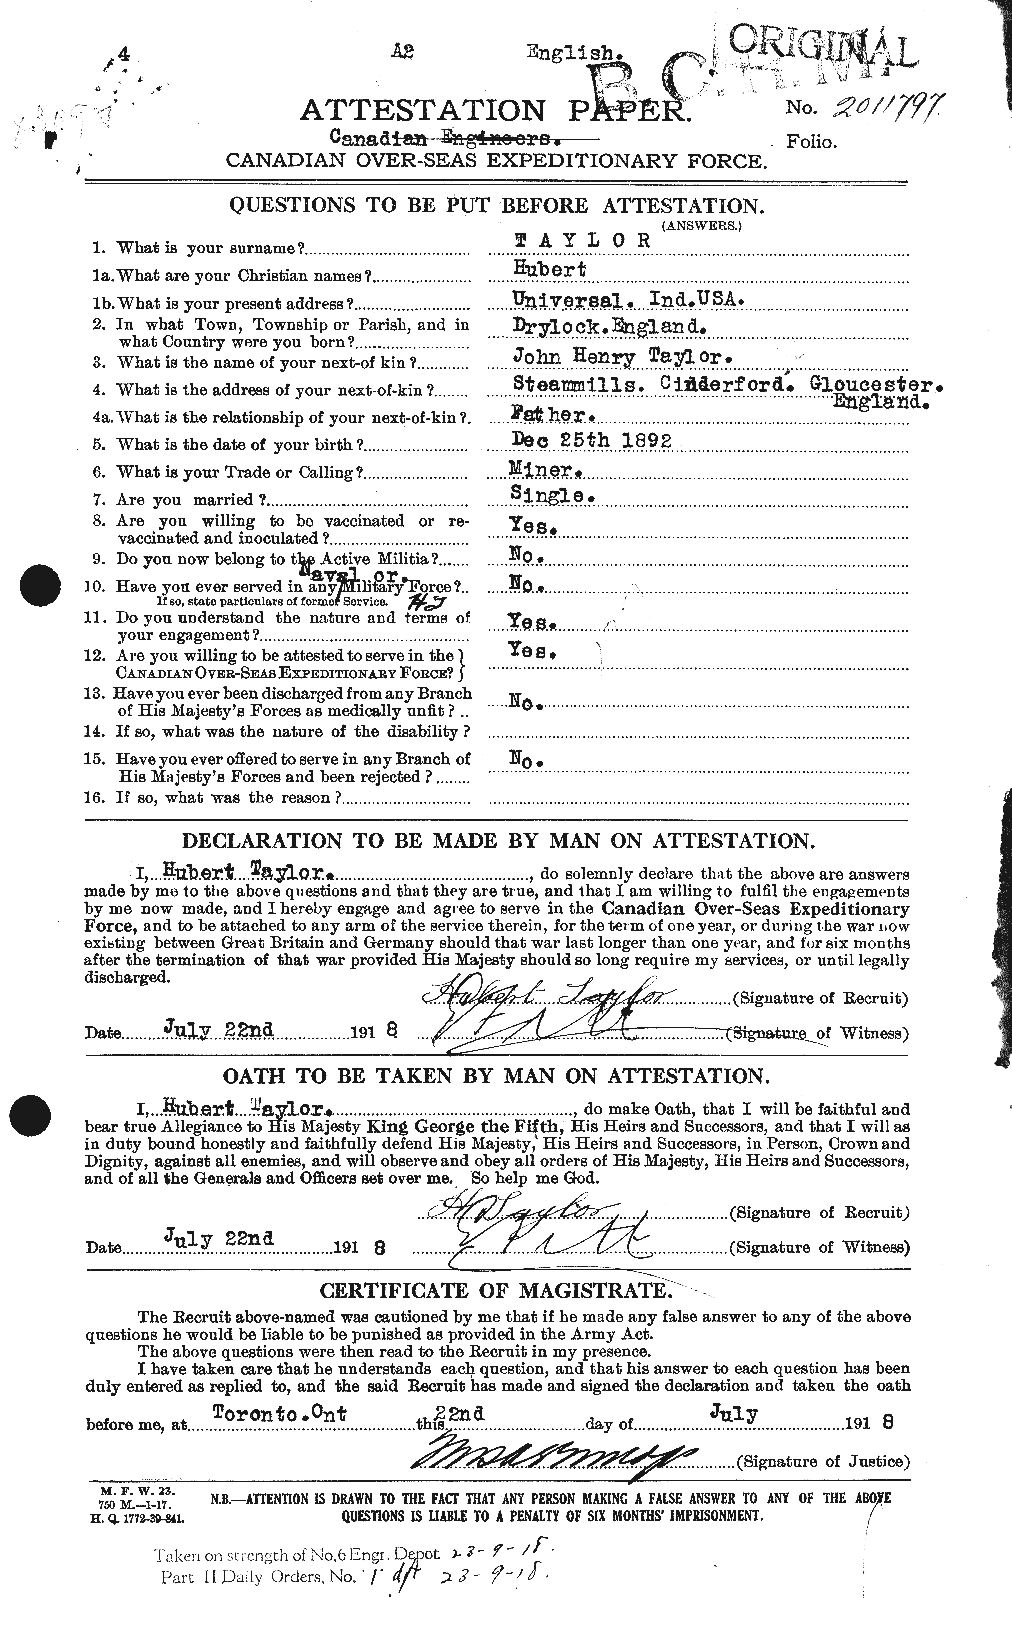 Dossiers du Personnel de la Première Guerre mondiale - CEC 626607a